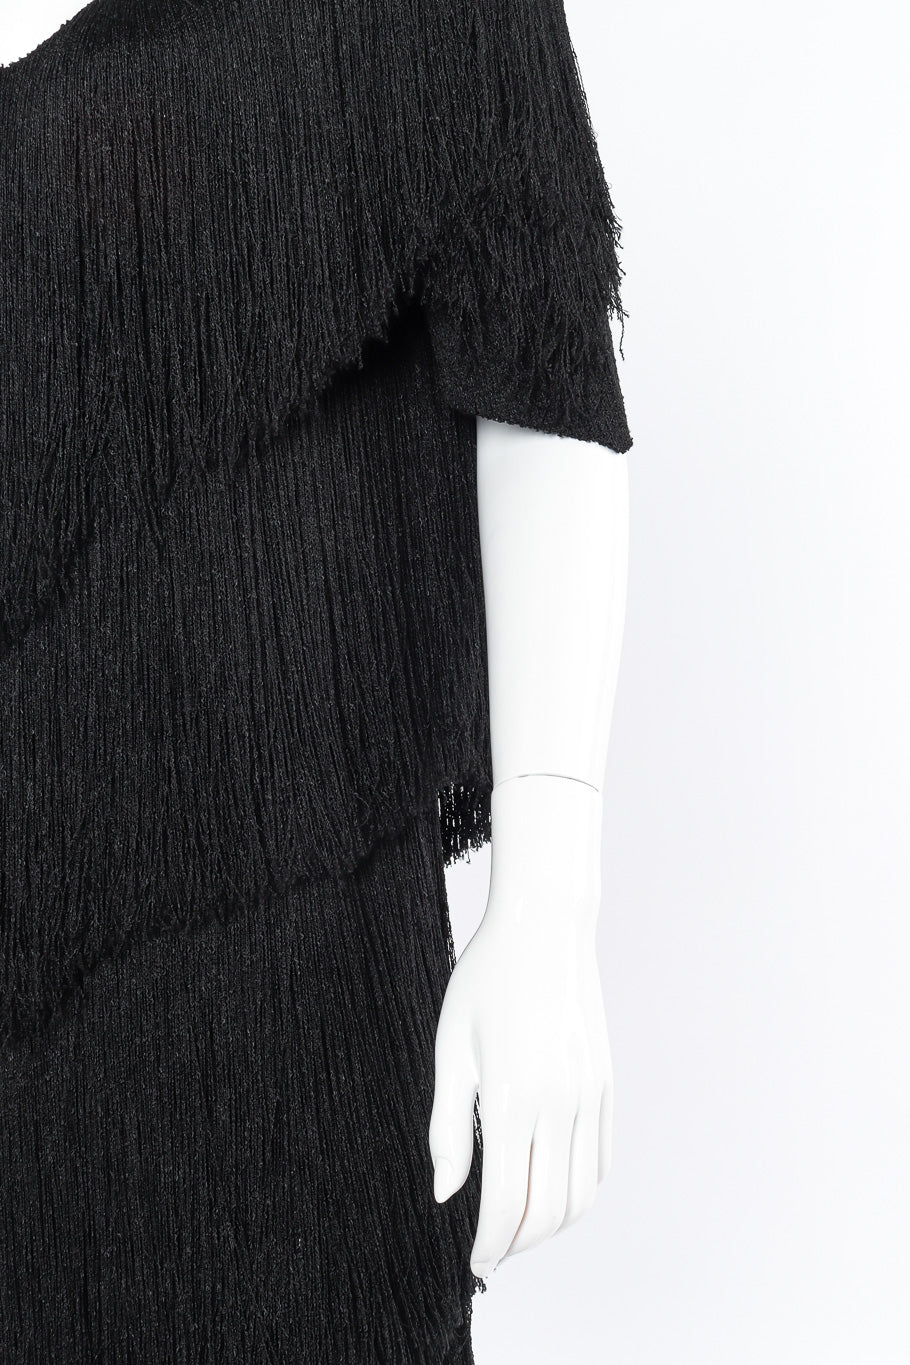 Brenda Fringe yarn fringe tiered dress on mannequin @recessla